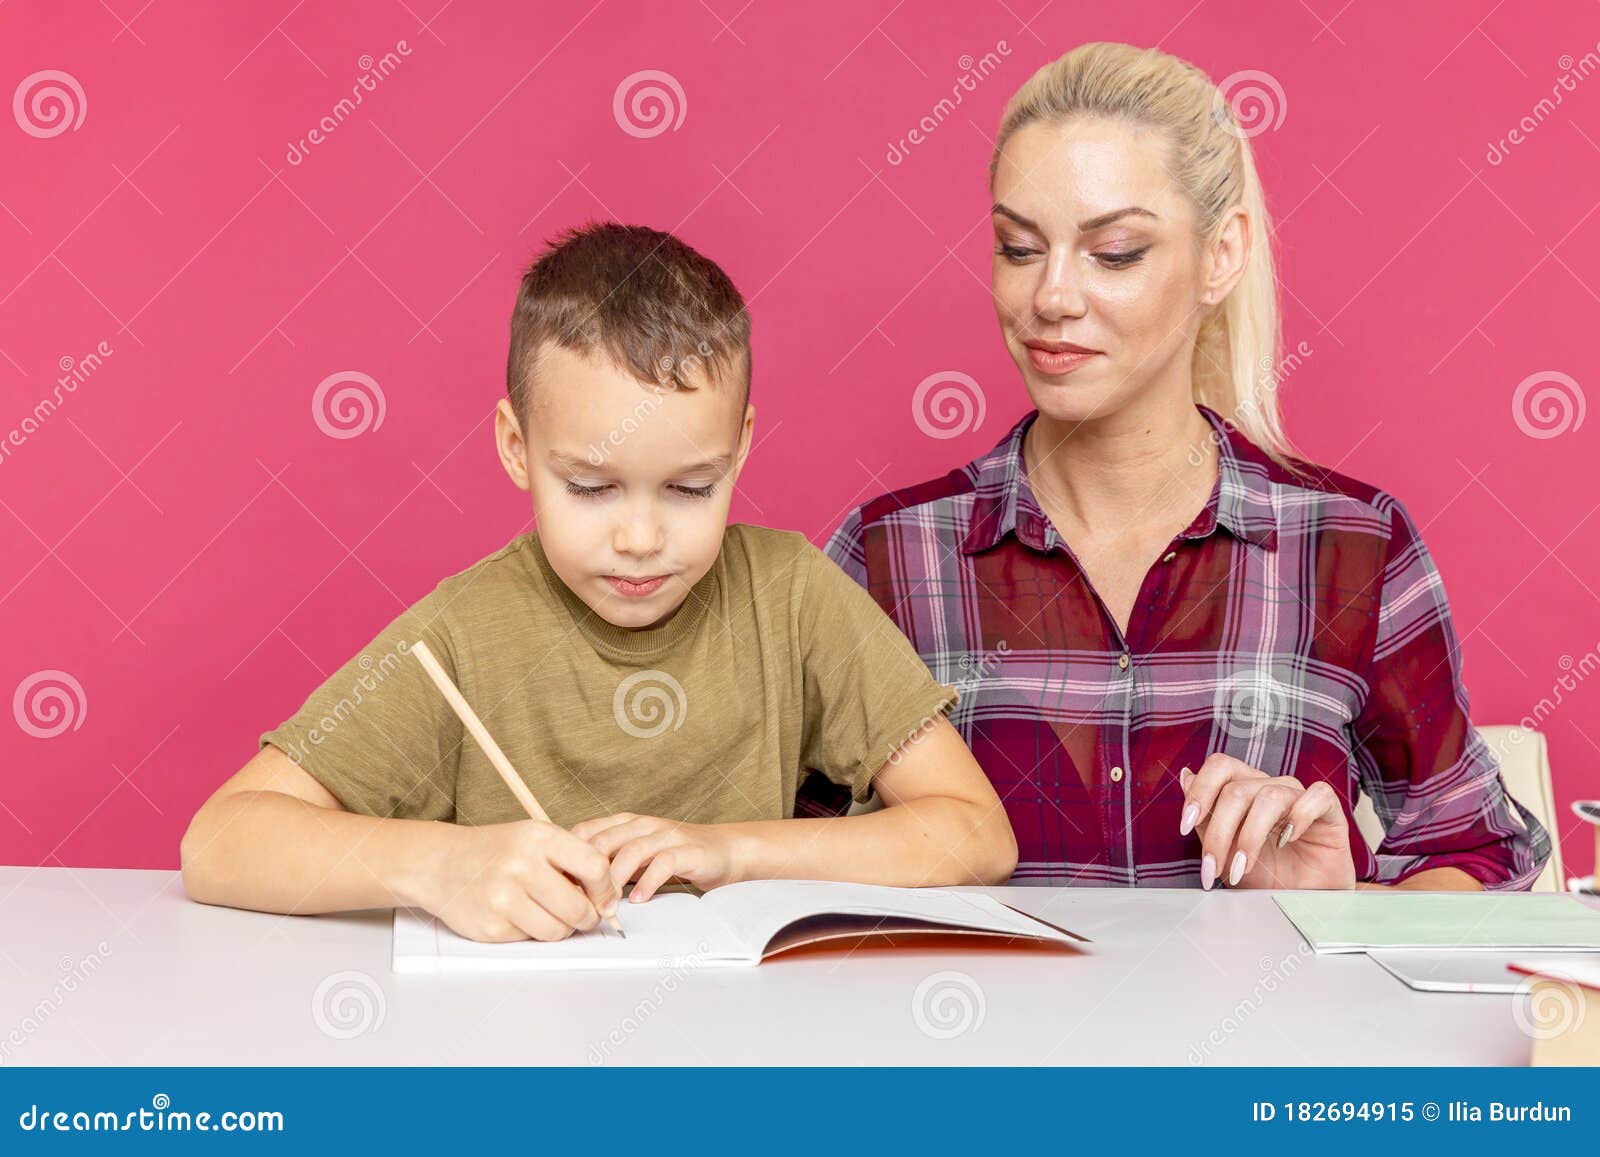 tutor on homework